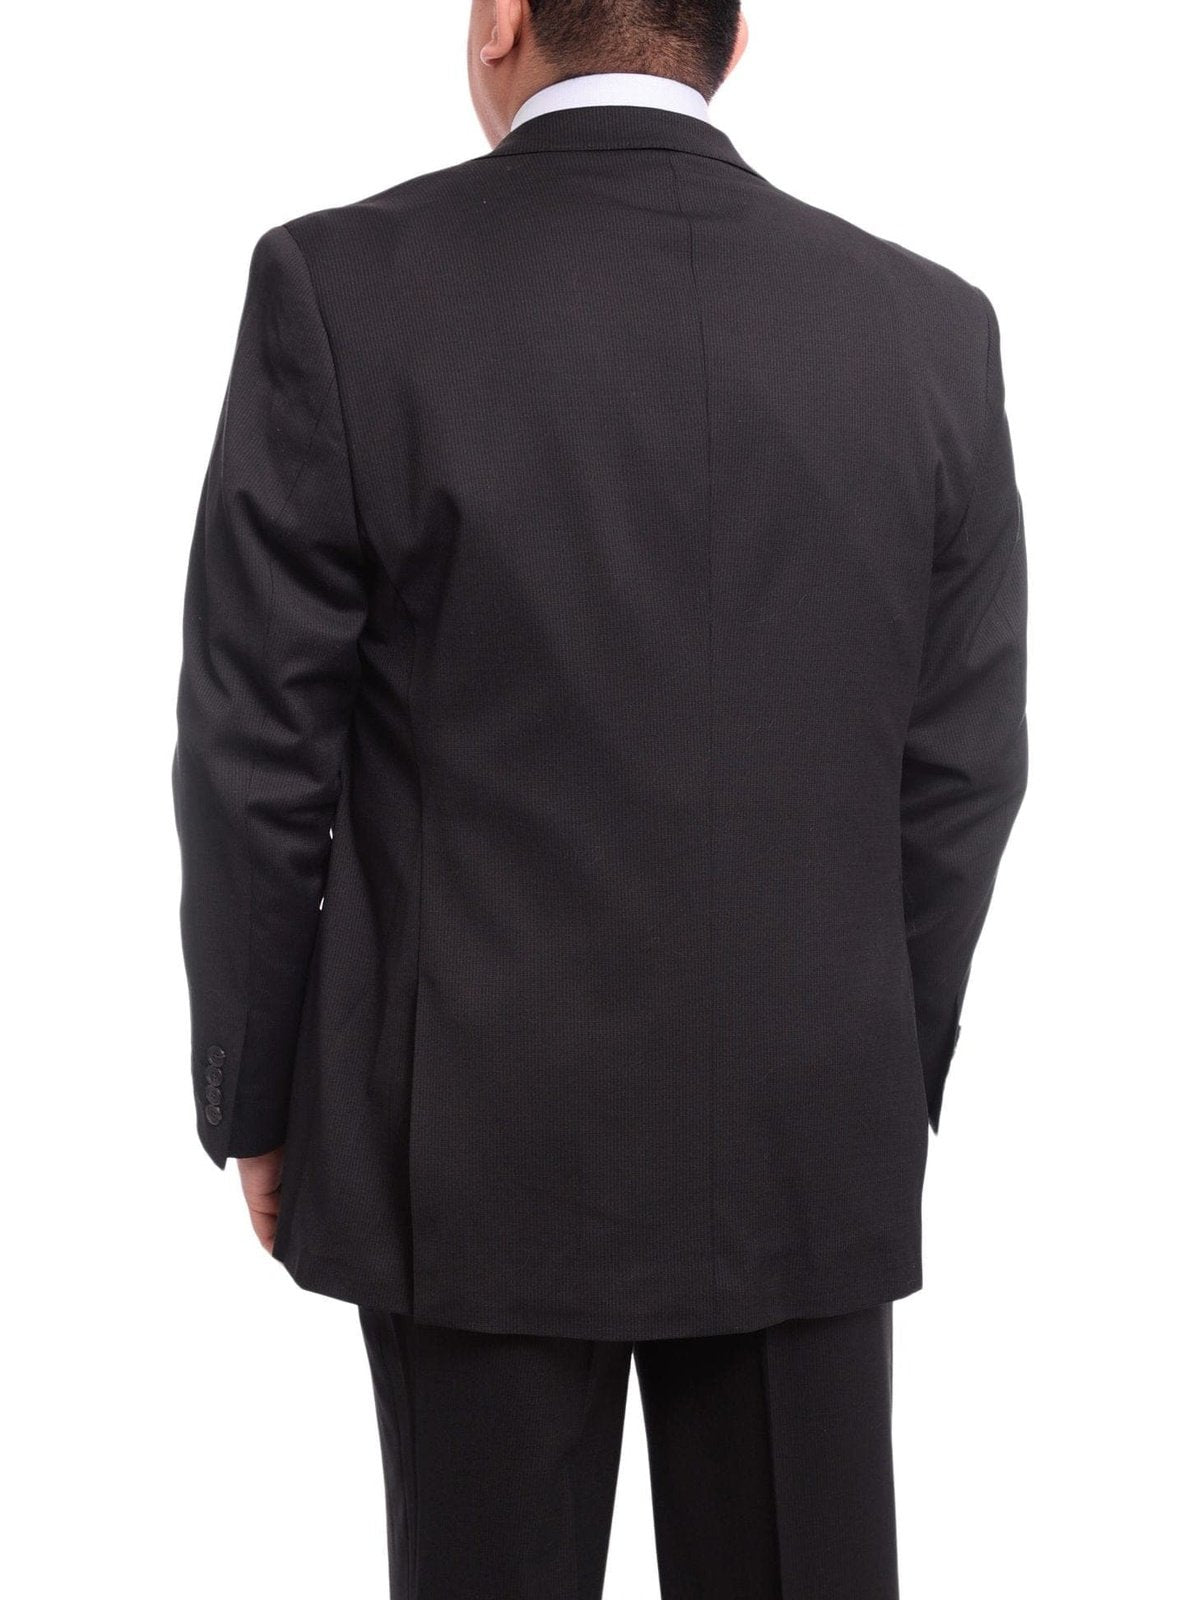 Arthur Black TWO PIECE SUITS Men&#39;s Arthur Black Executive Portly Fit Black Pinstriped 2 Button Wool Suit